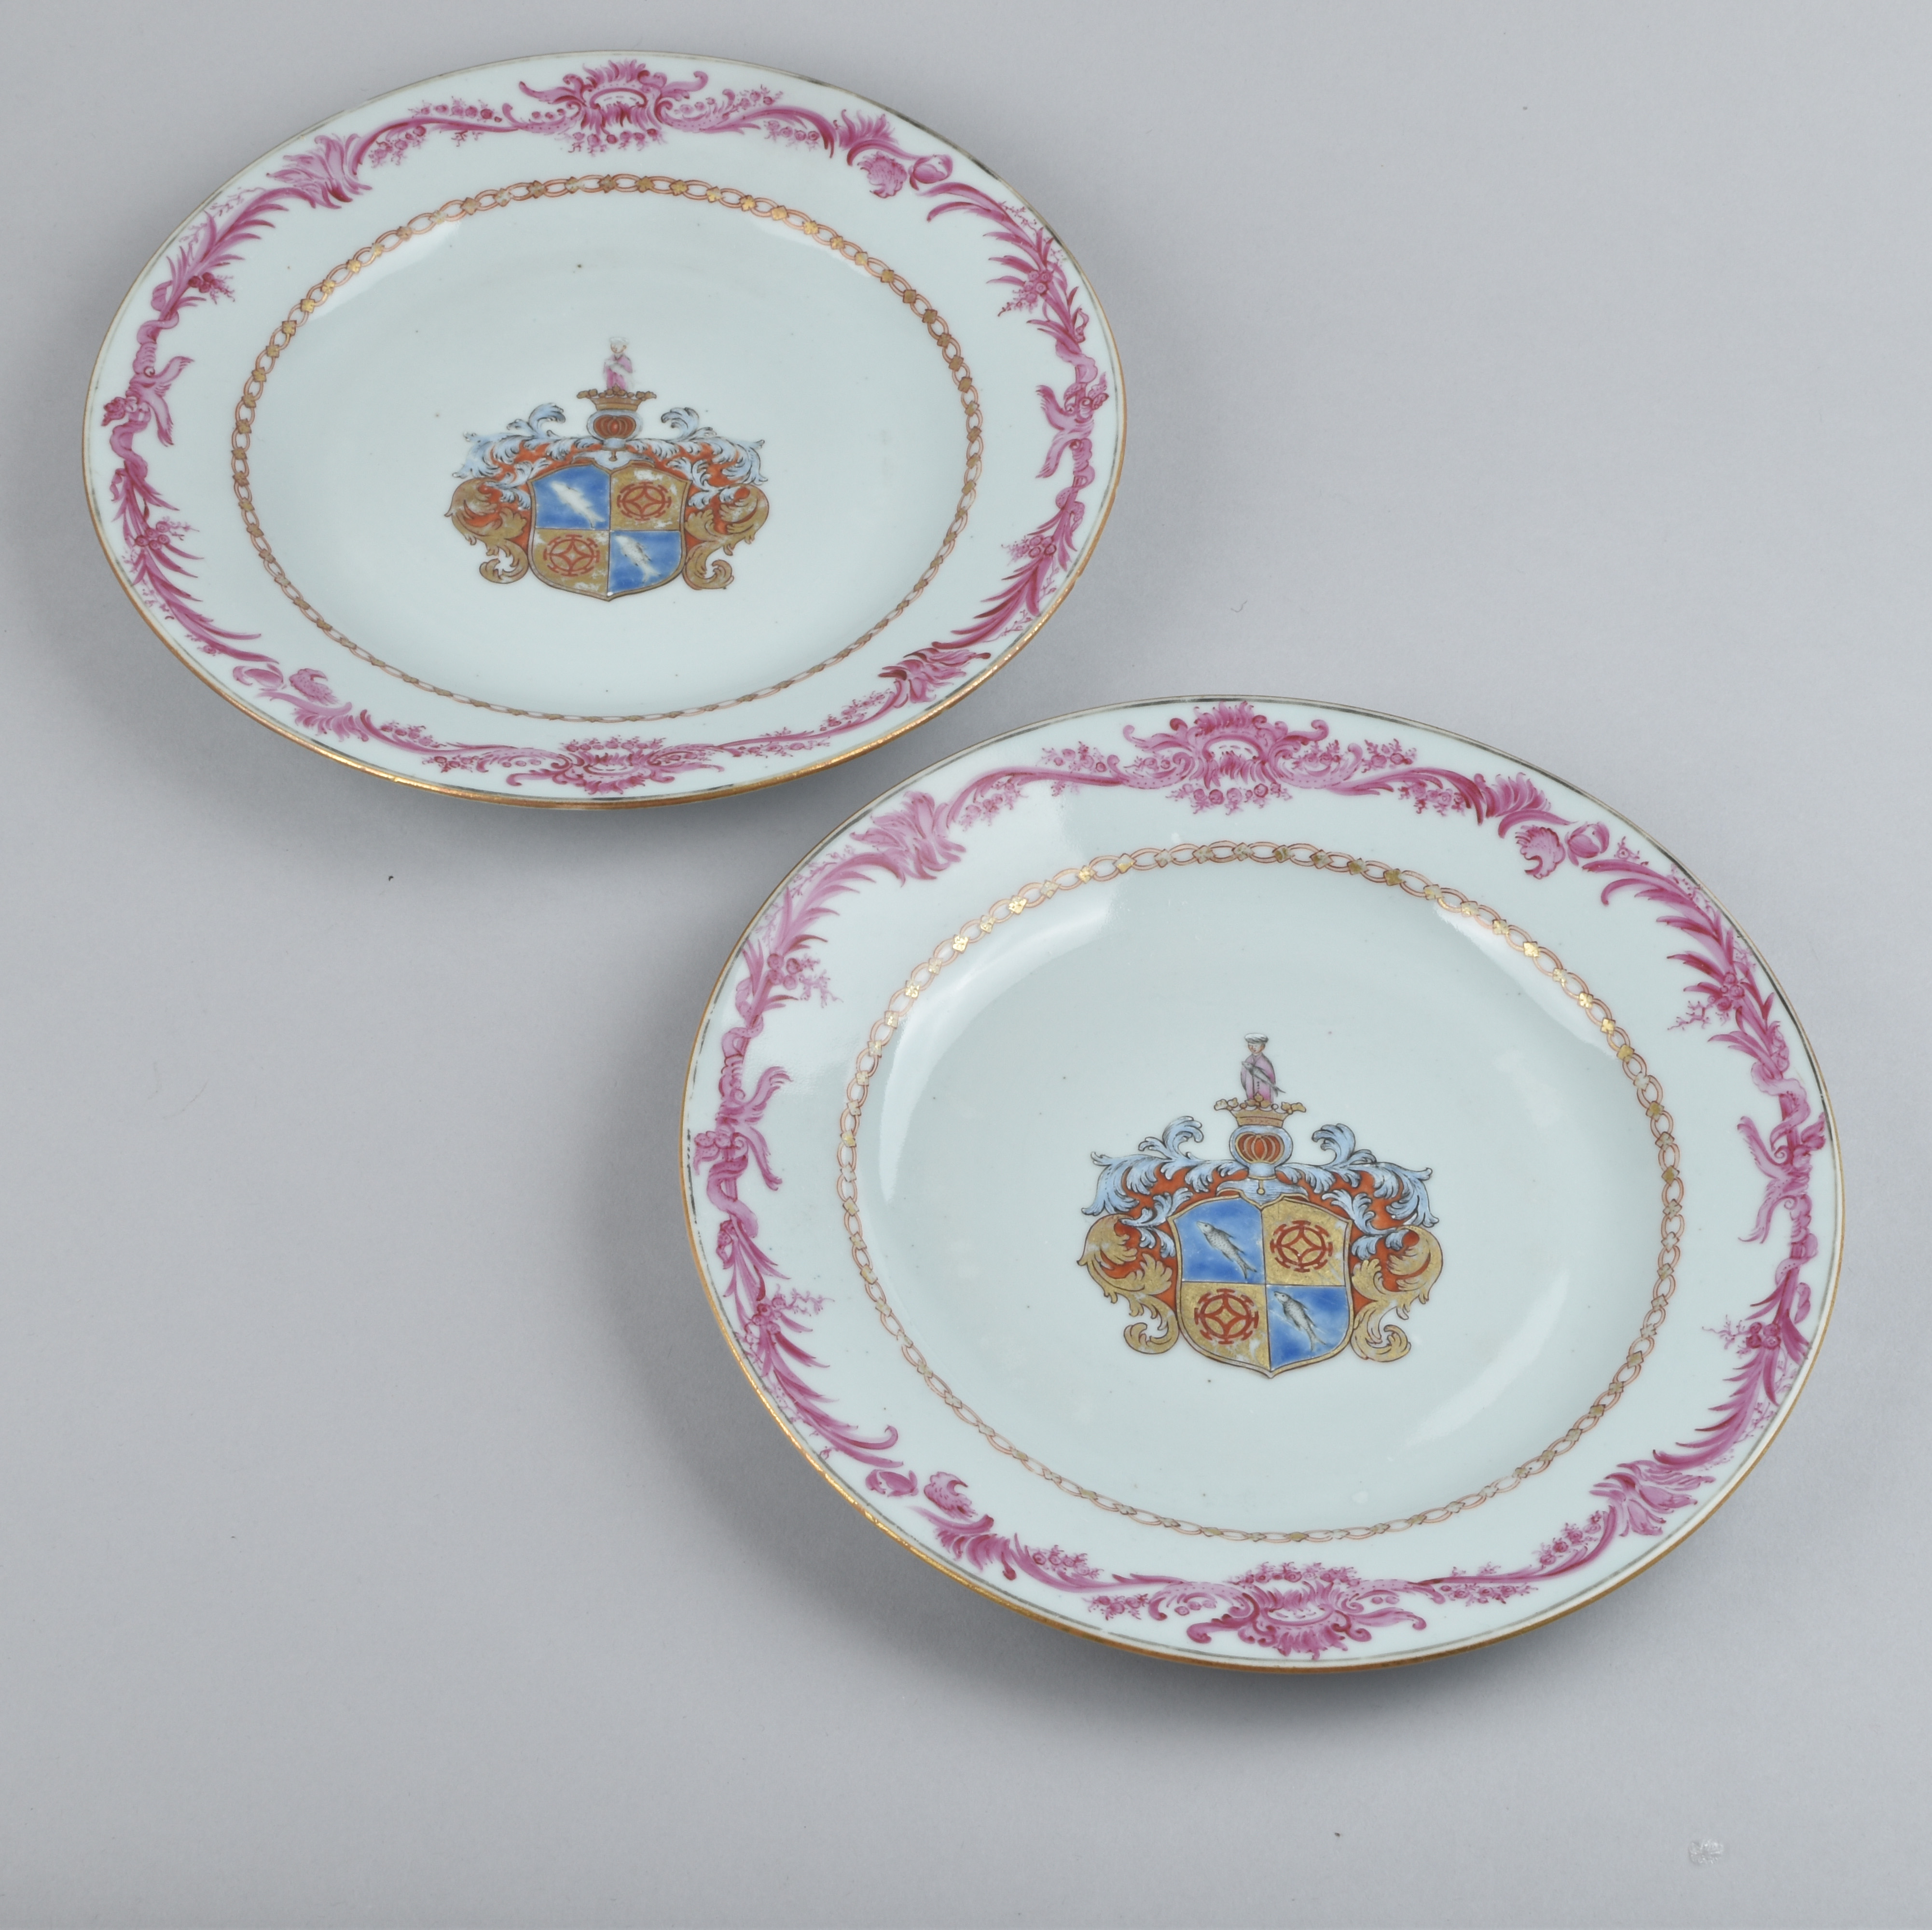 Porcelaine Qianlong (173§-1795), Chine